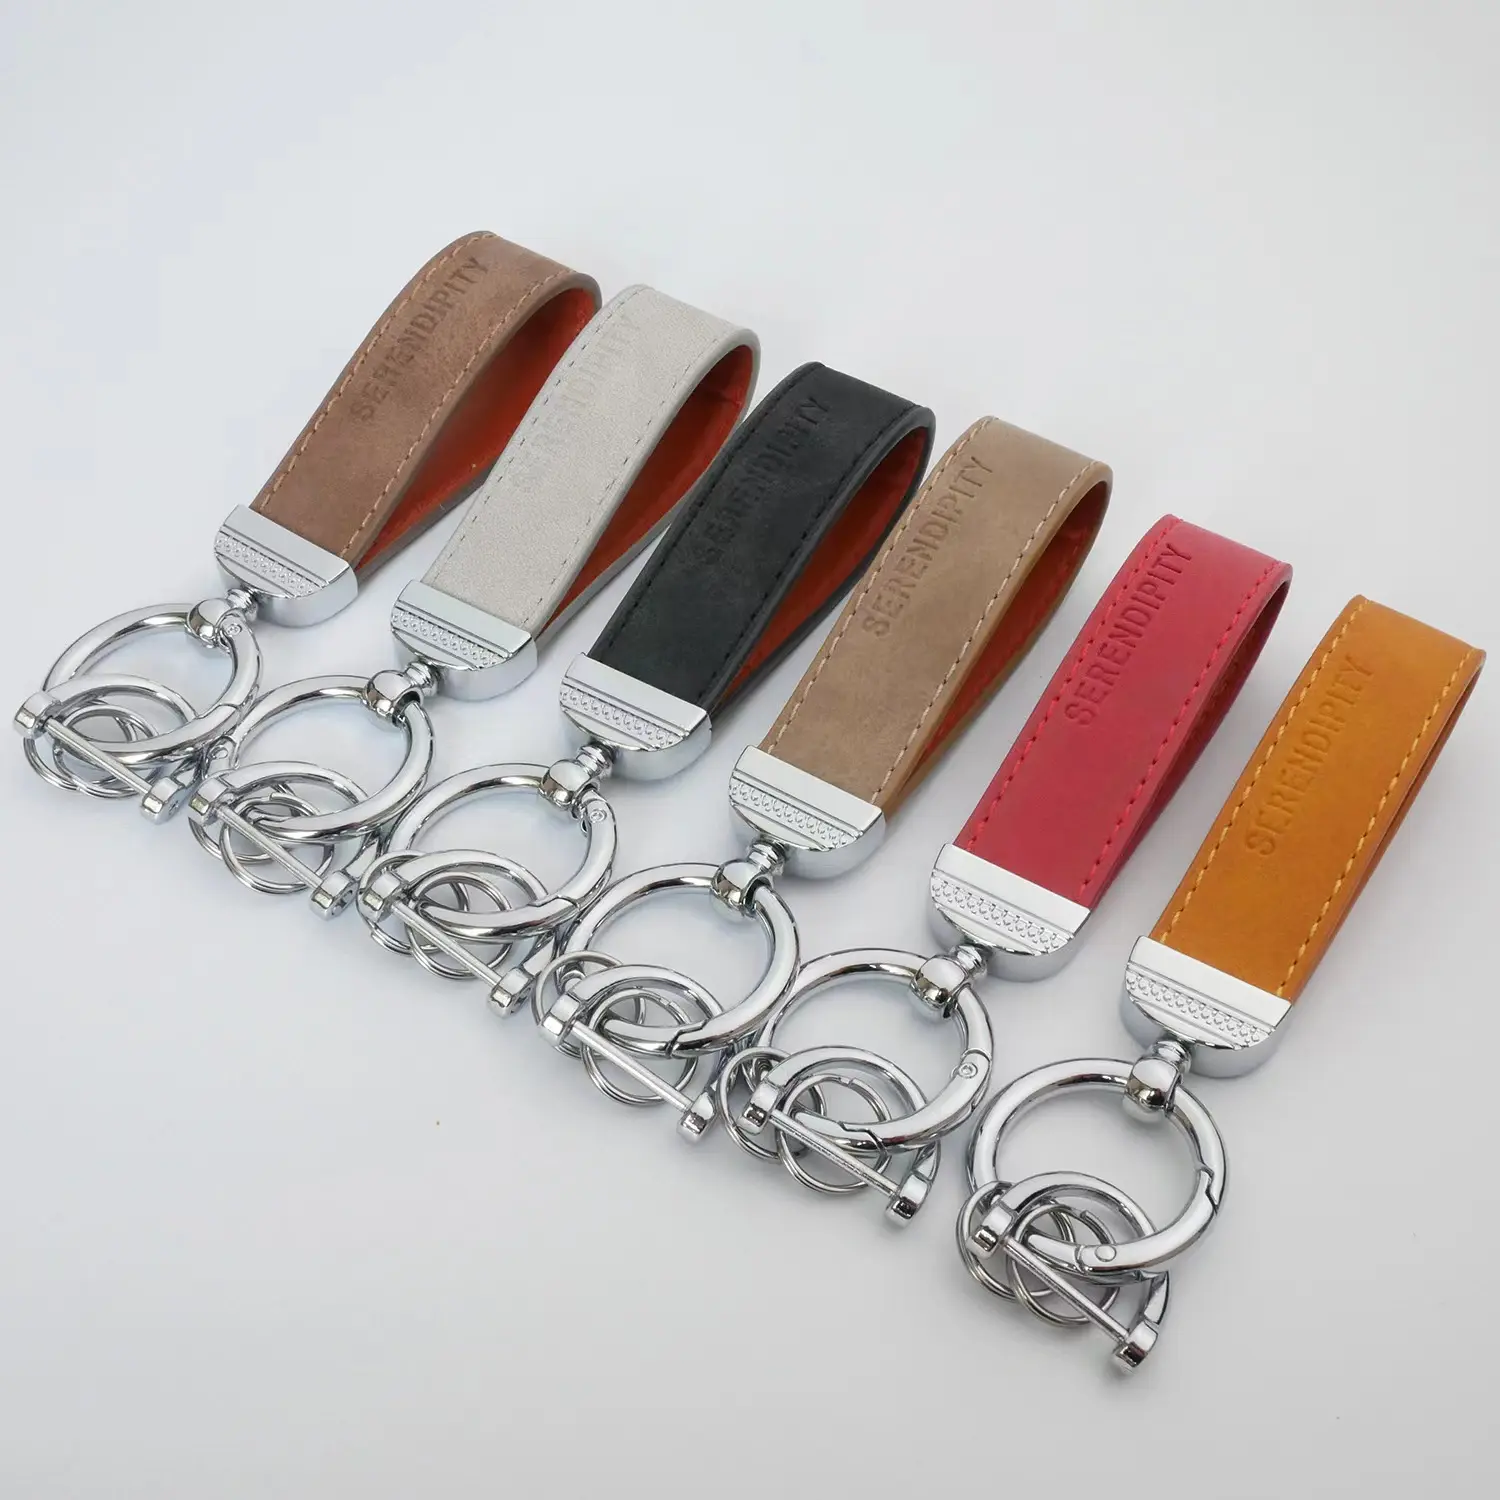 Vente en gros logo personnalisé breloque vache porte-clés cadeau véritable porte-clés boucle fer à cheval PU marque de voiture métal cuir porte-clés